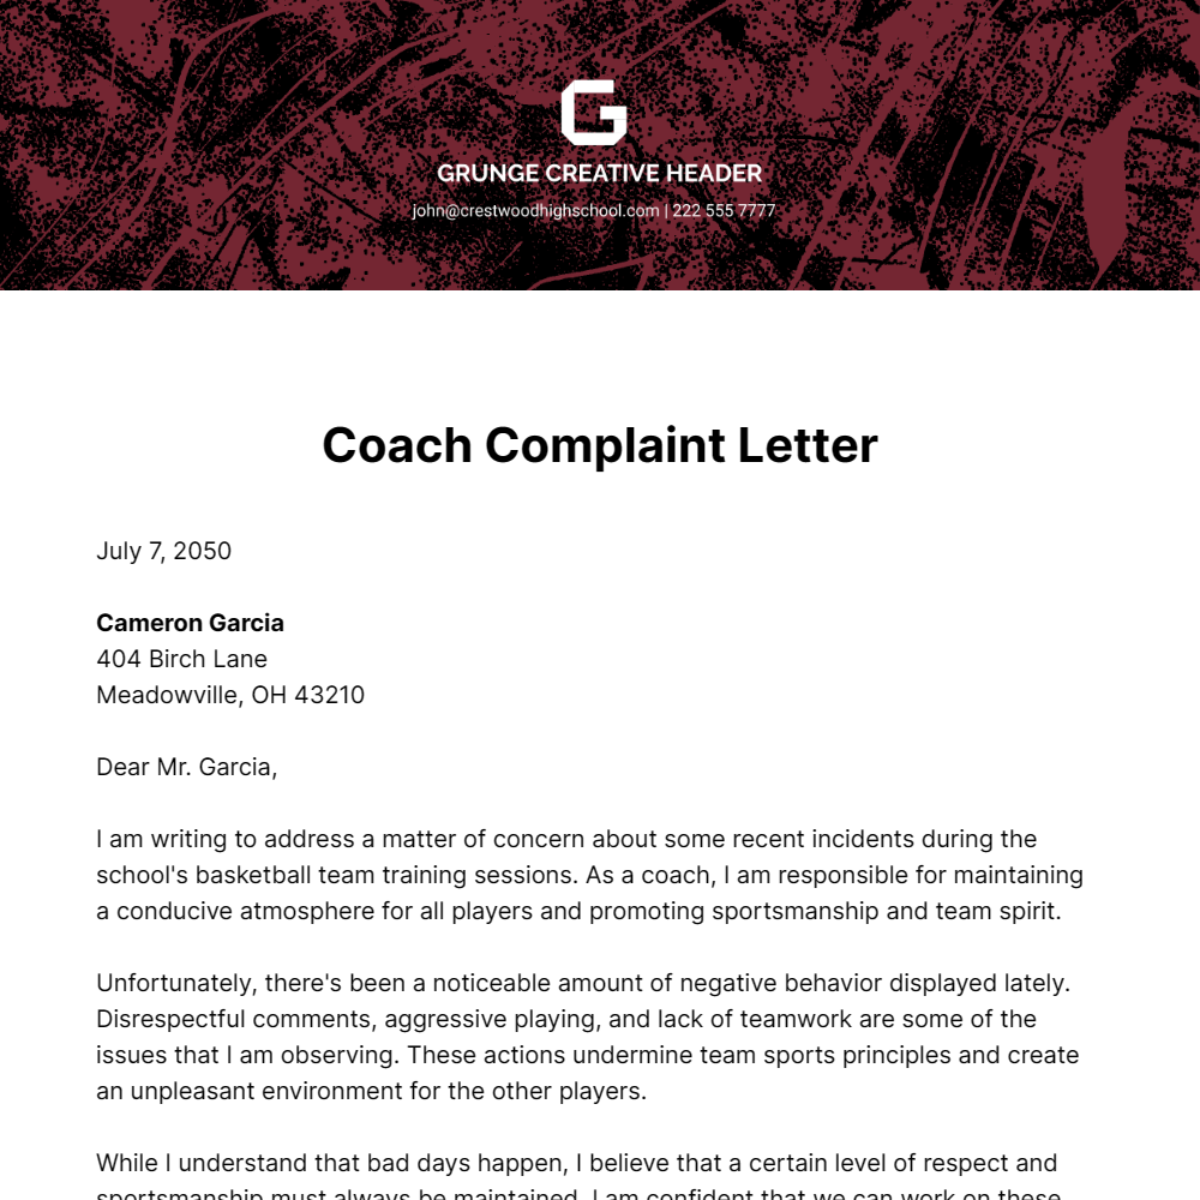 Coach Complaint Letter Template